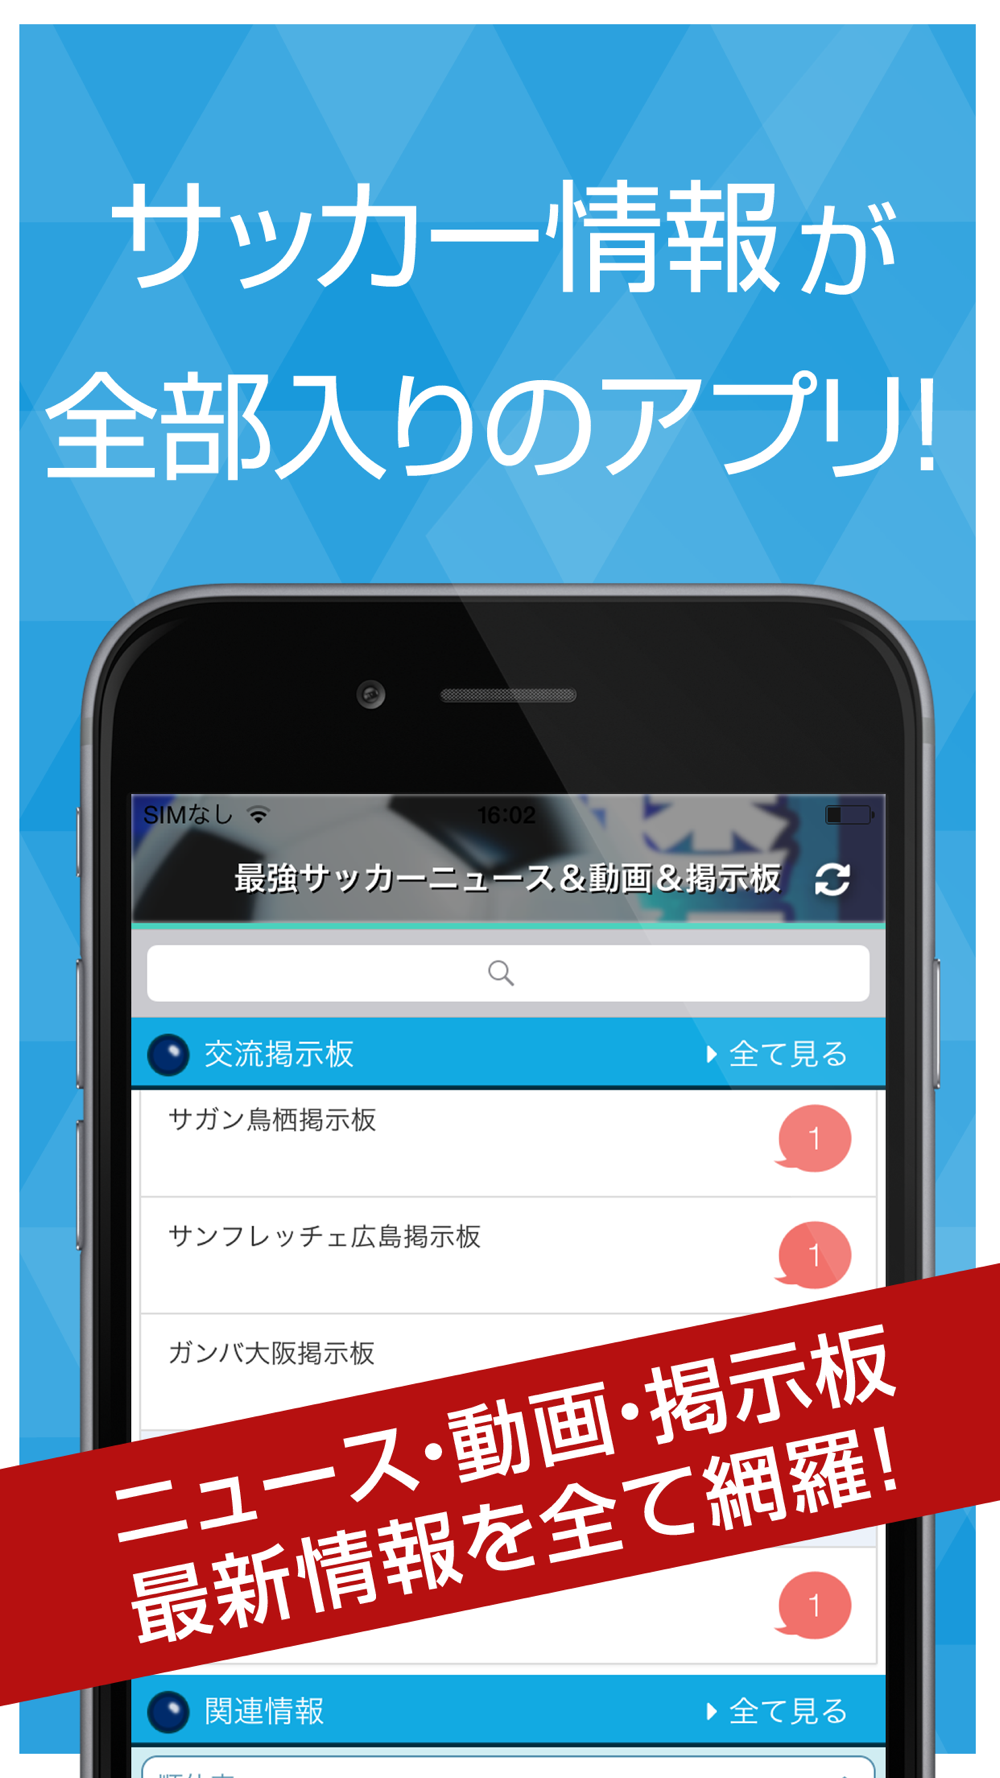 最強サッカーニュース 動画 掲示板 Free Download App For Iphone Steprimo Com